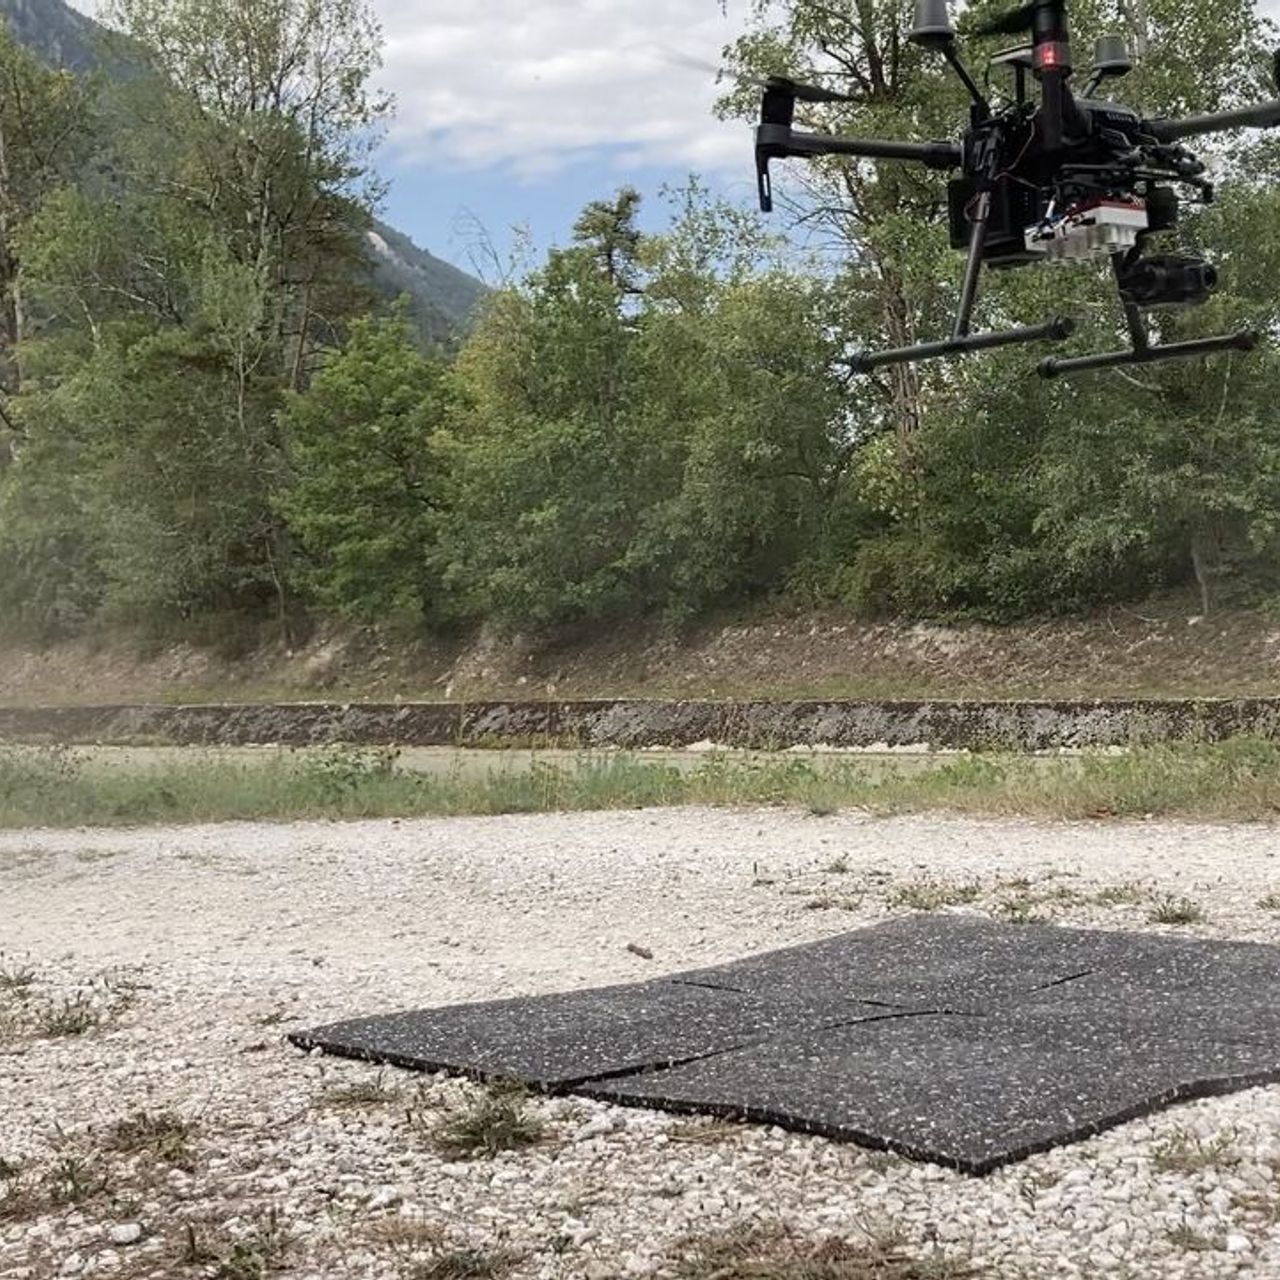 Pētniece Petra D'Odorico lido ar dronu Pfinvaldes meža izpētes vietā Valē 2020. gada vasarā (Foto Frederik BaumgartenWSL)